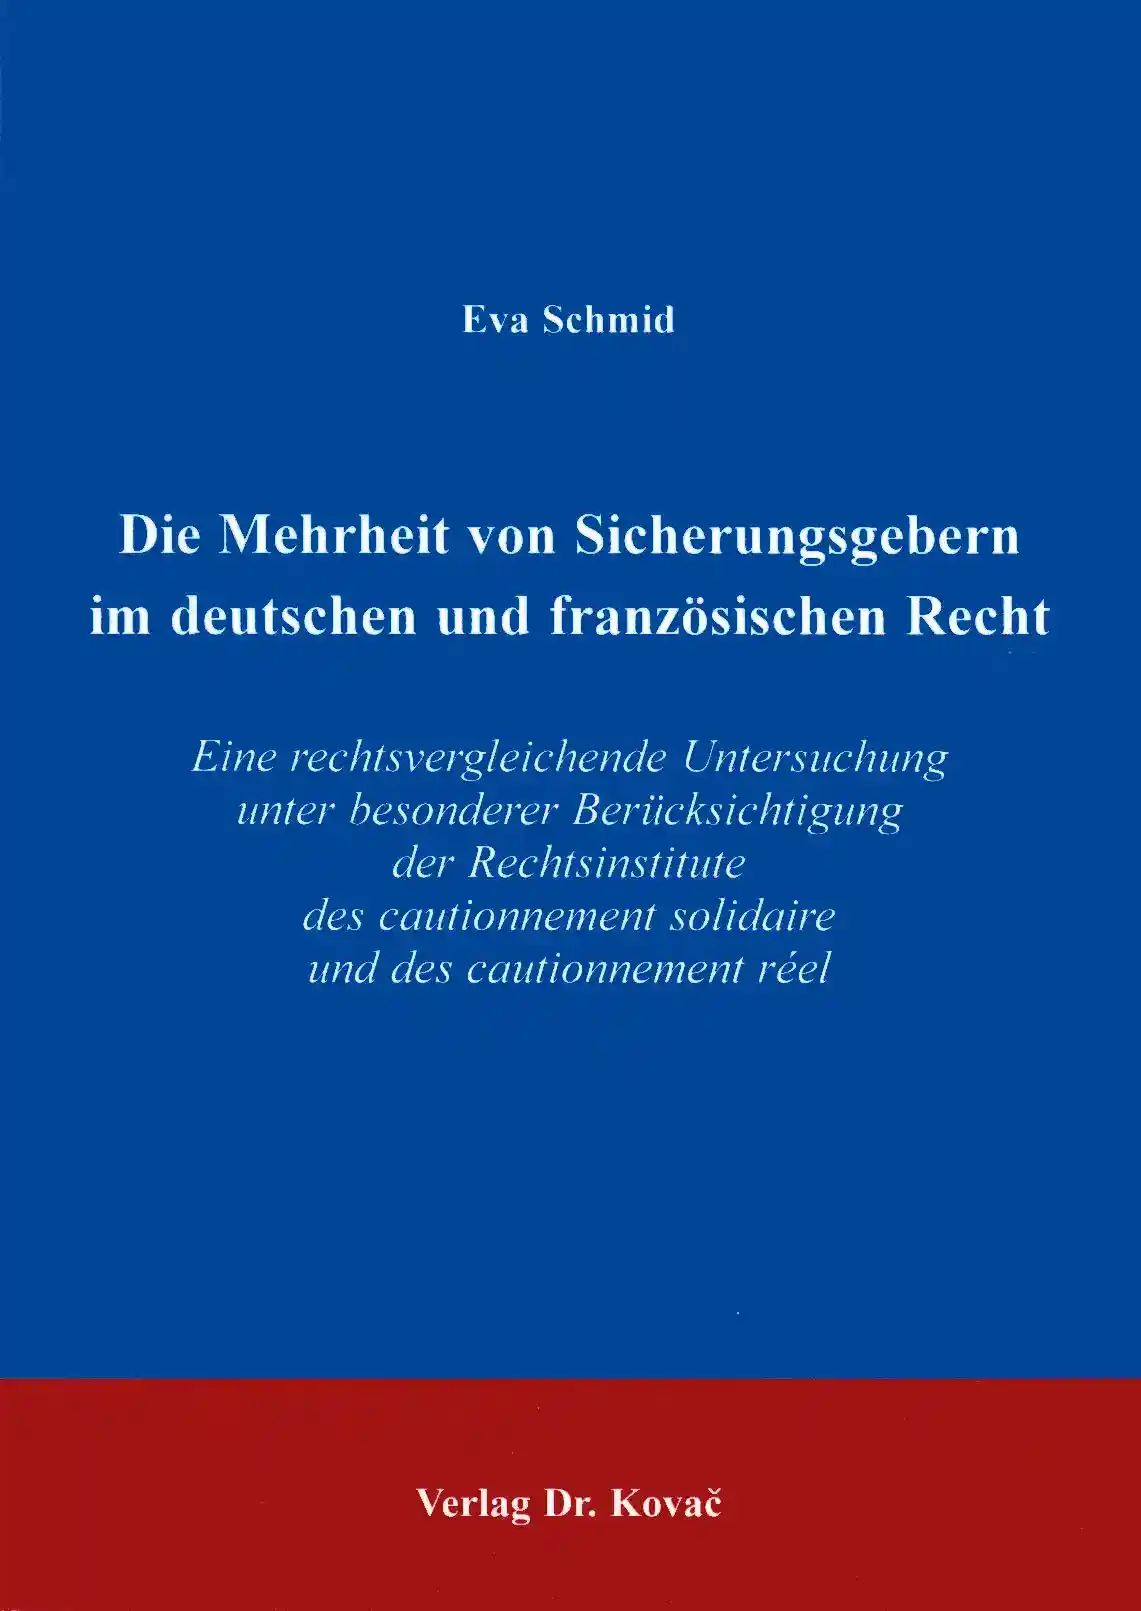 Dissertation: Die Mehrheit von Sicherungsgebern im deutschen und französischen Recht